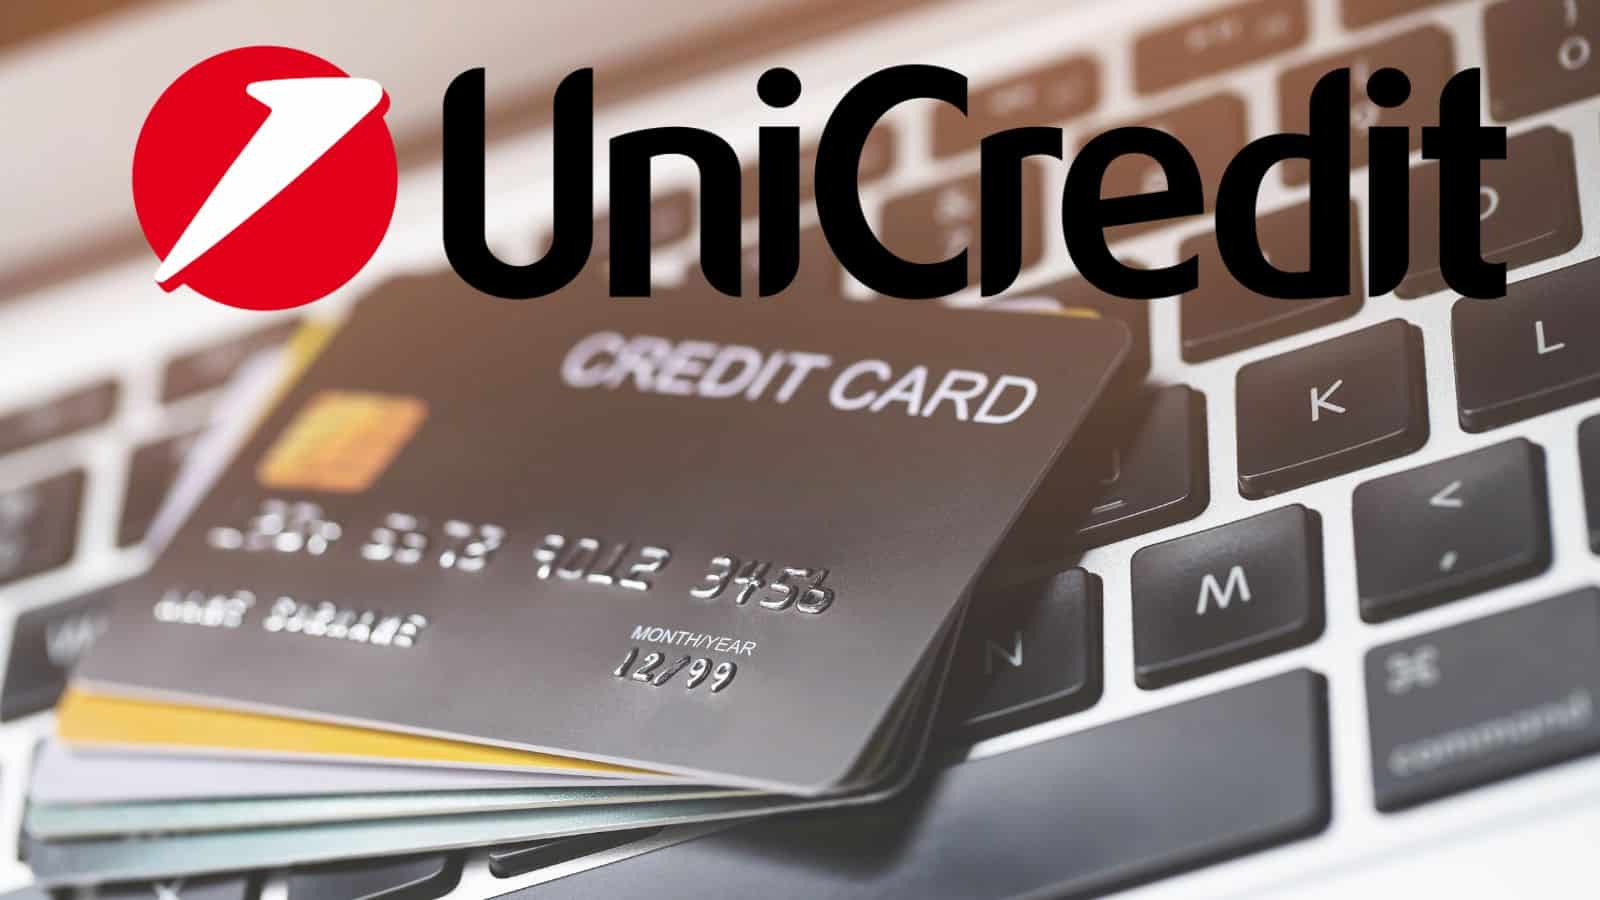 Unicredit: in arrivo la modifica unilaterale per le carte di debito 